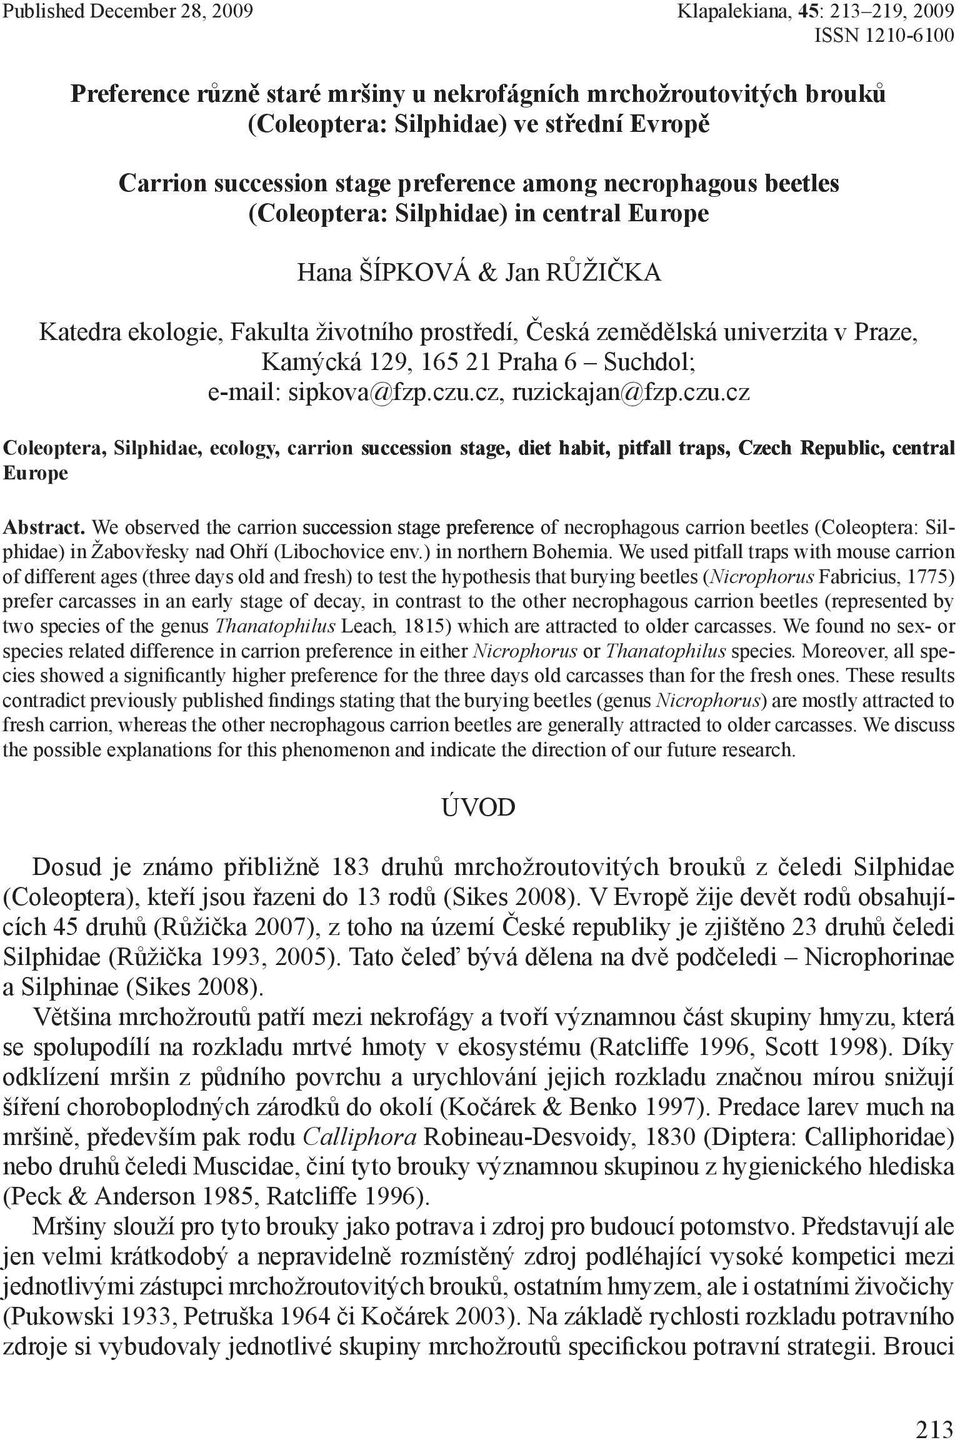 Kamýcká 19, 165 1 Praha 6 Suchdol; e-mail: sipkova@fzp.czu.